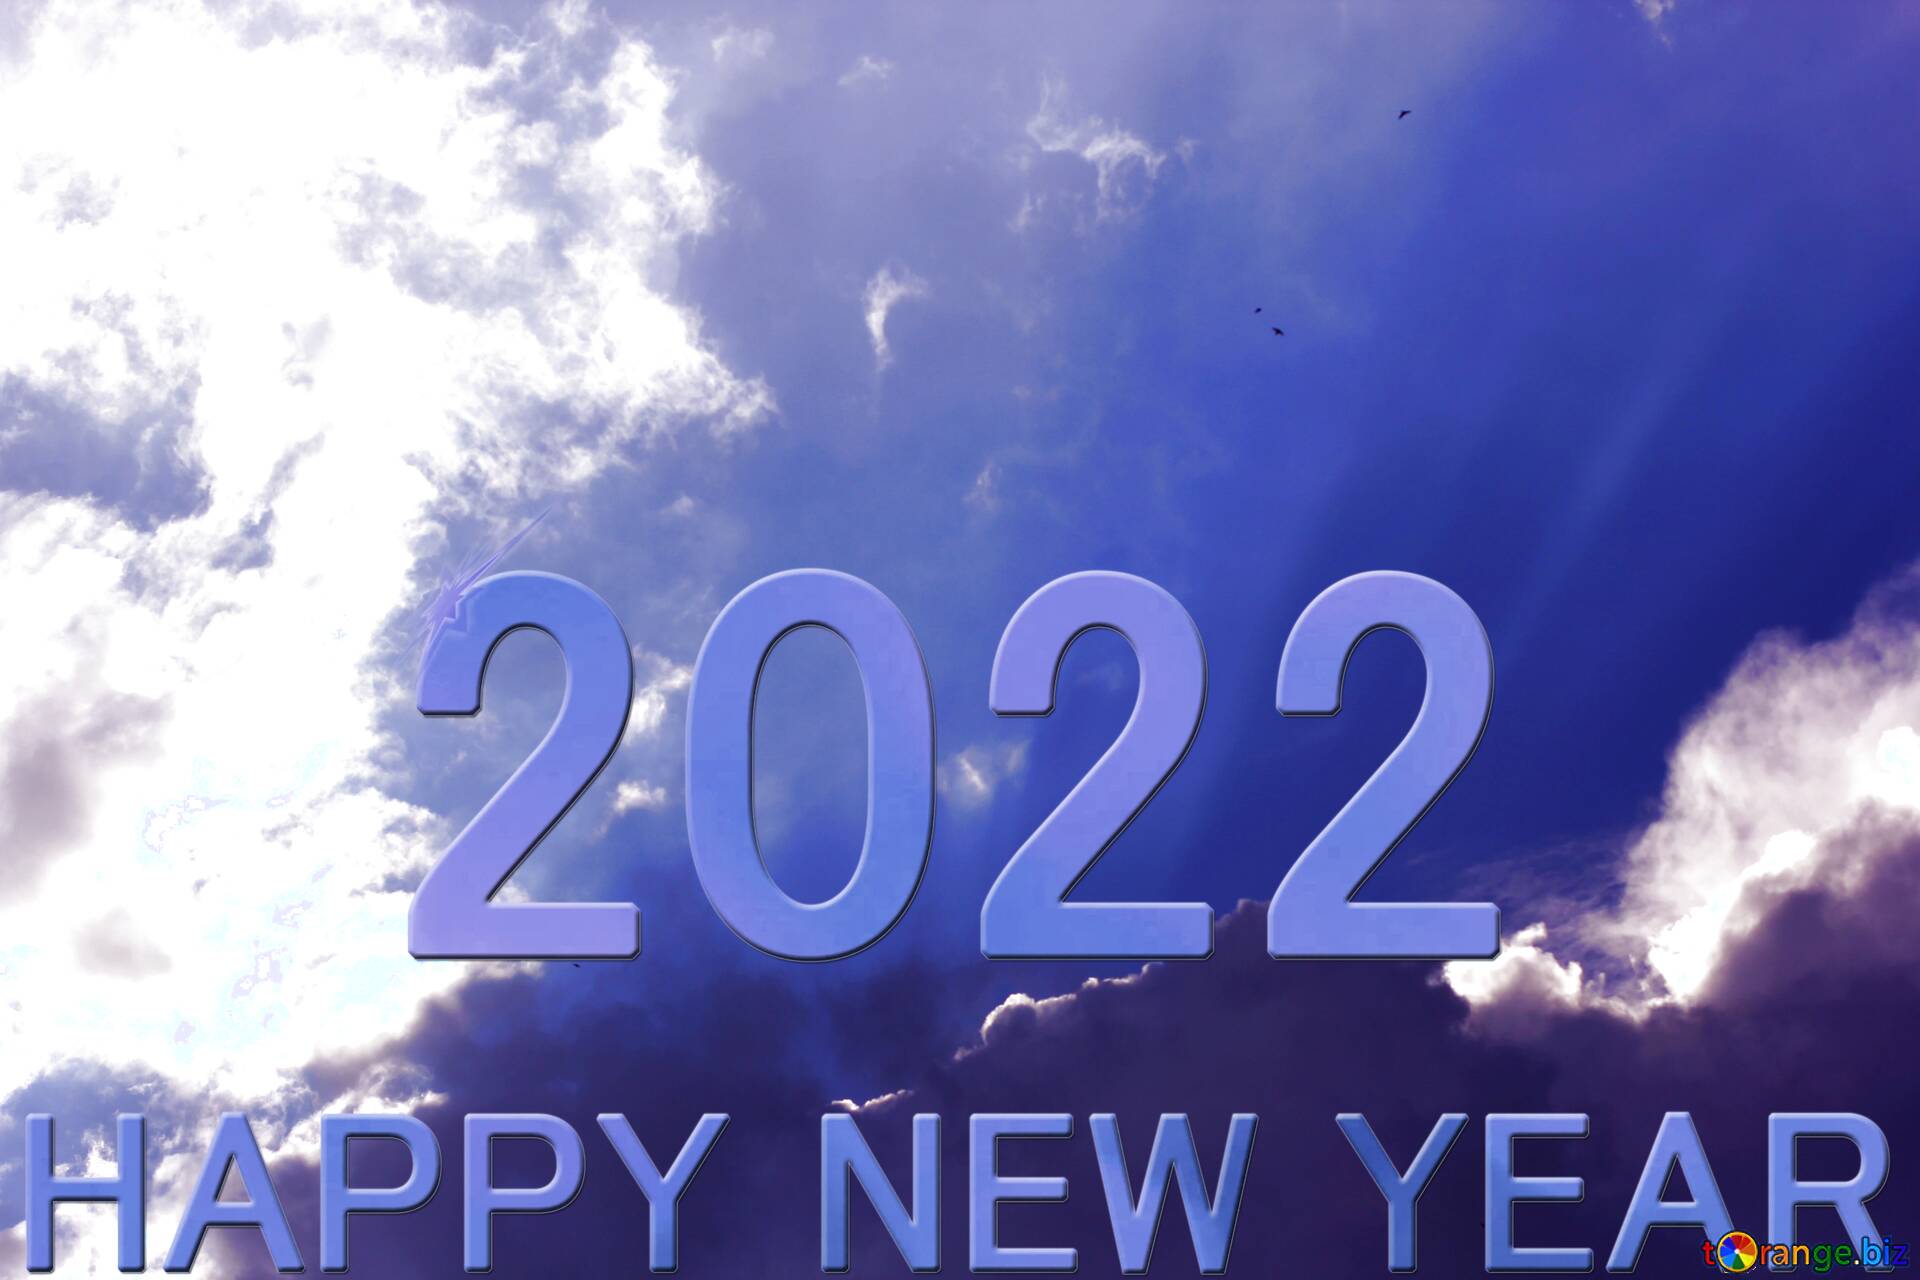 4 декабря 2022 год. Изображения 2022 год. 2022 Год надпись. 2022 Год картинки. Надпись Happy New 2022.